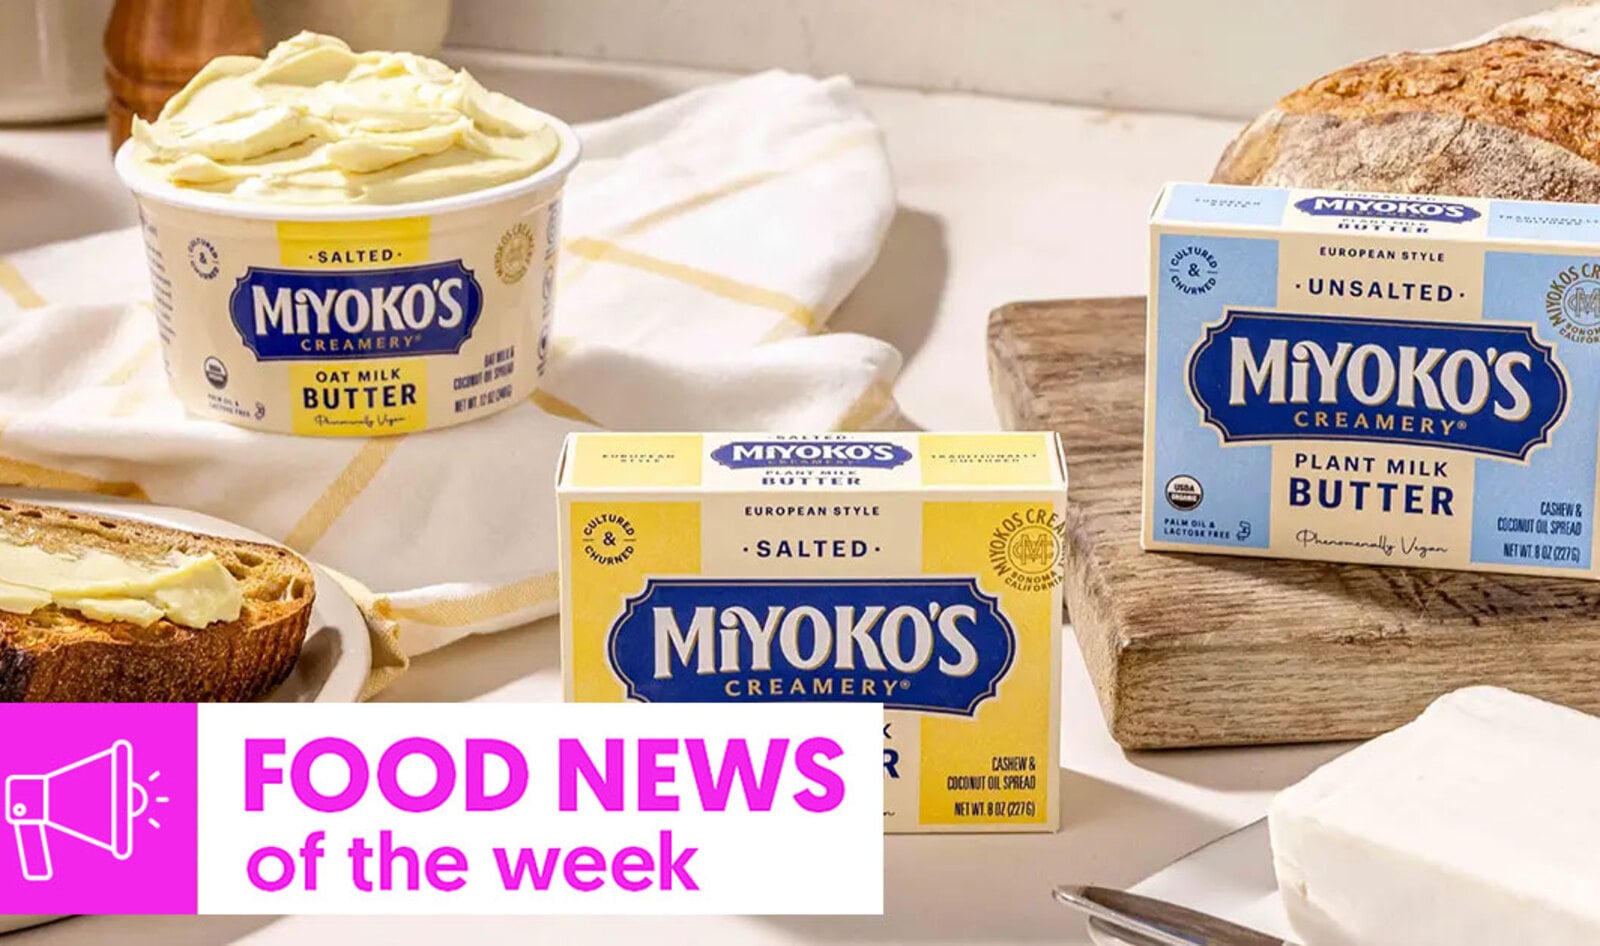 Vegan Food News of the Week: Miyoko’s Considers Sale, Virgin Atlantic’s Snack Bars, and More&nbsp;